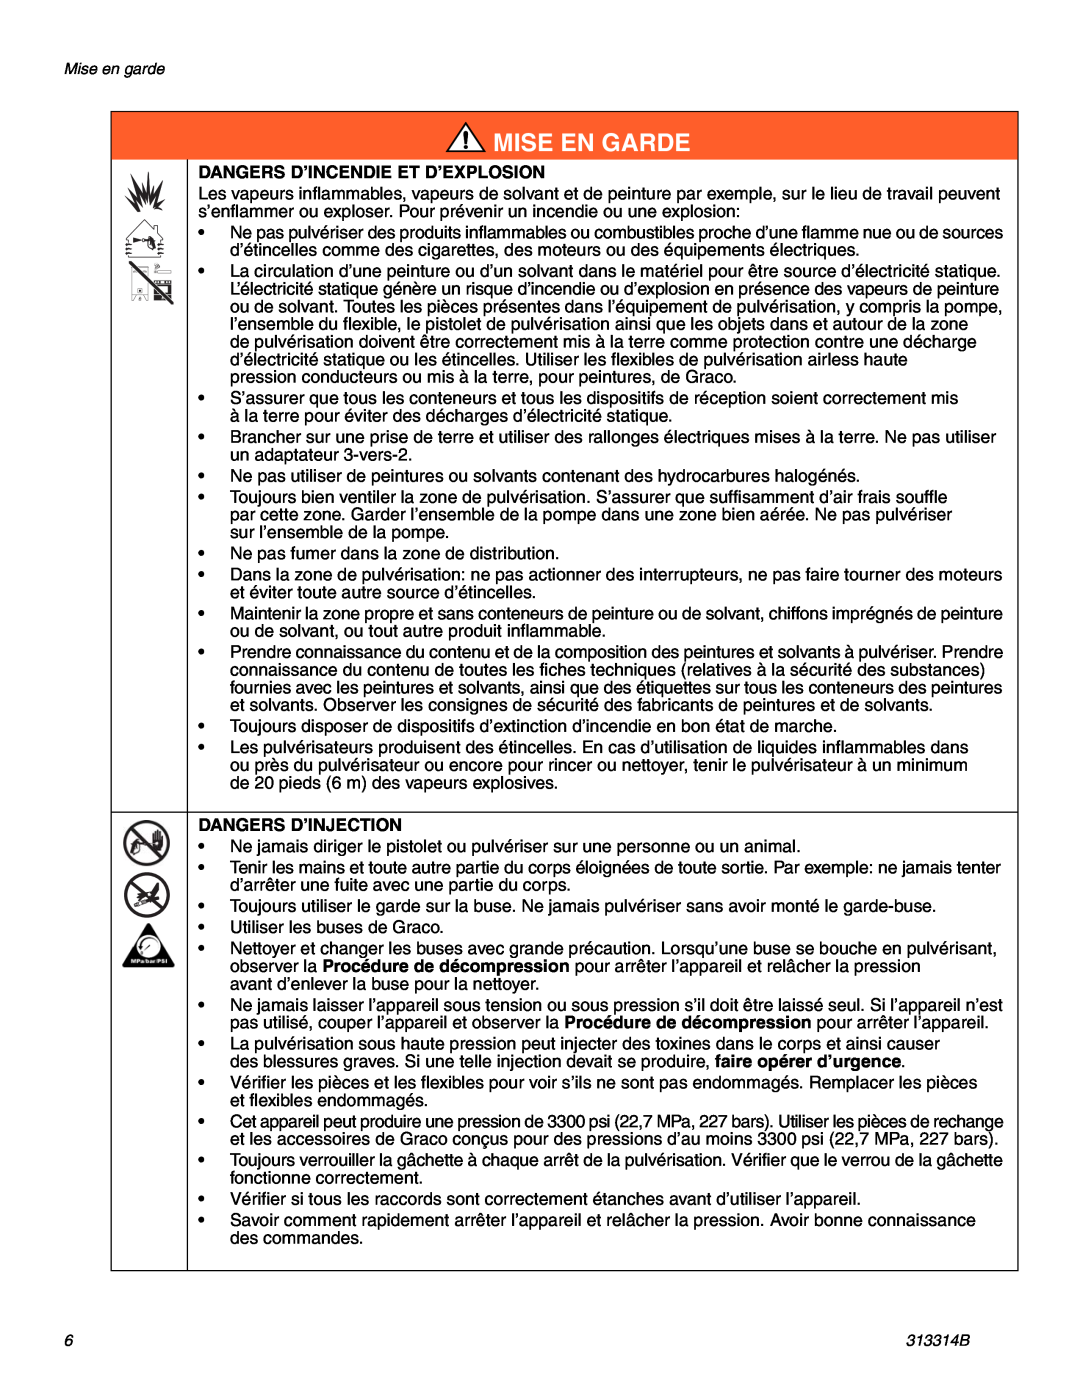 Graco Inc 313314B, 300E important safety instructions Dangers D’Incendie Et D’Explosion, Dangers D’Injection, Mise En Garde 